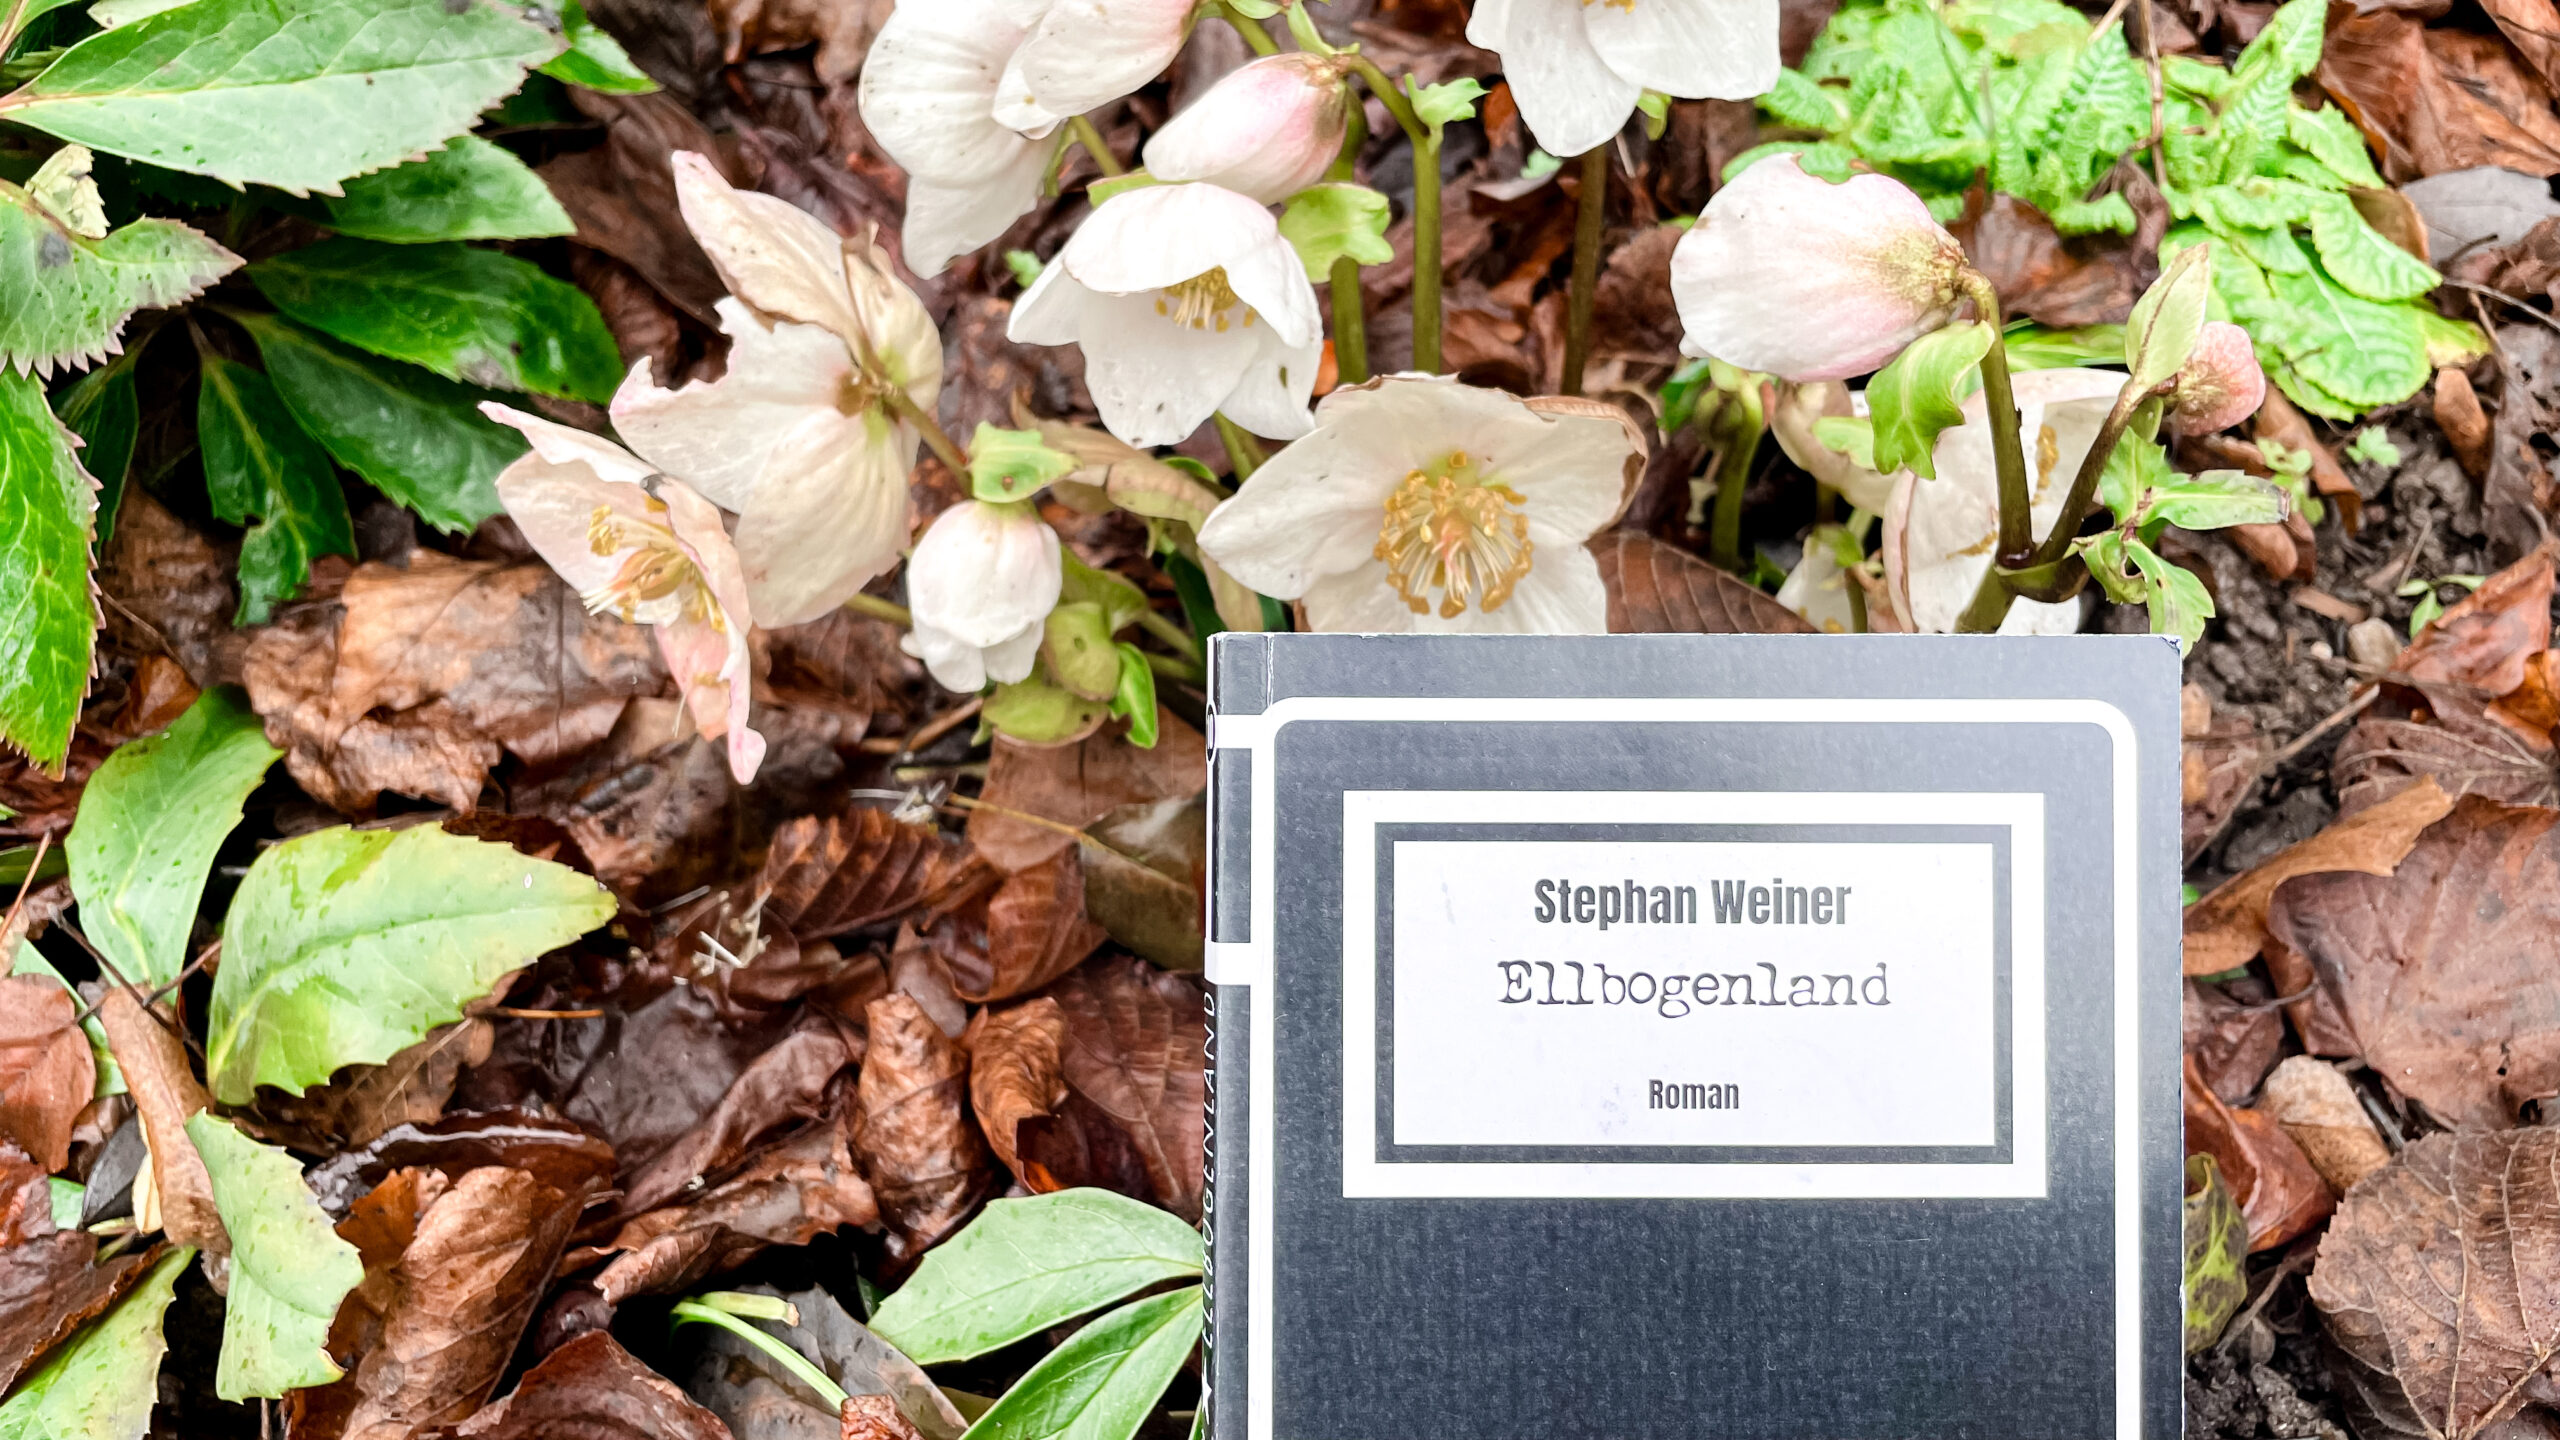 Das Buchcover von «Ellenbogenland» von Stephan Weiner ist vor einem Laubboden zu sehen, worin weisse Christrosen blühen. Ein paar grüne Blätter der Christrose sind ebenfalls zu sehen.